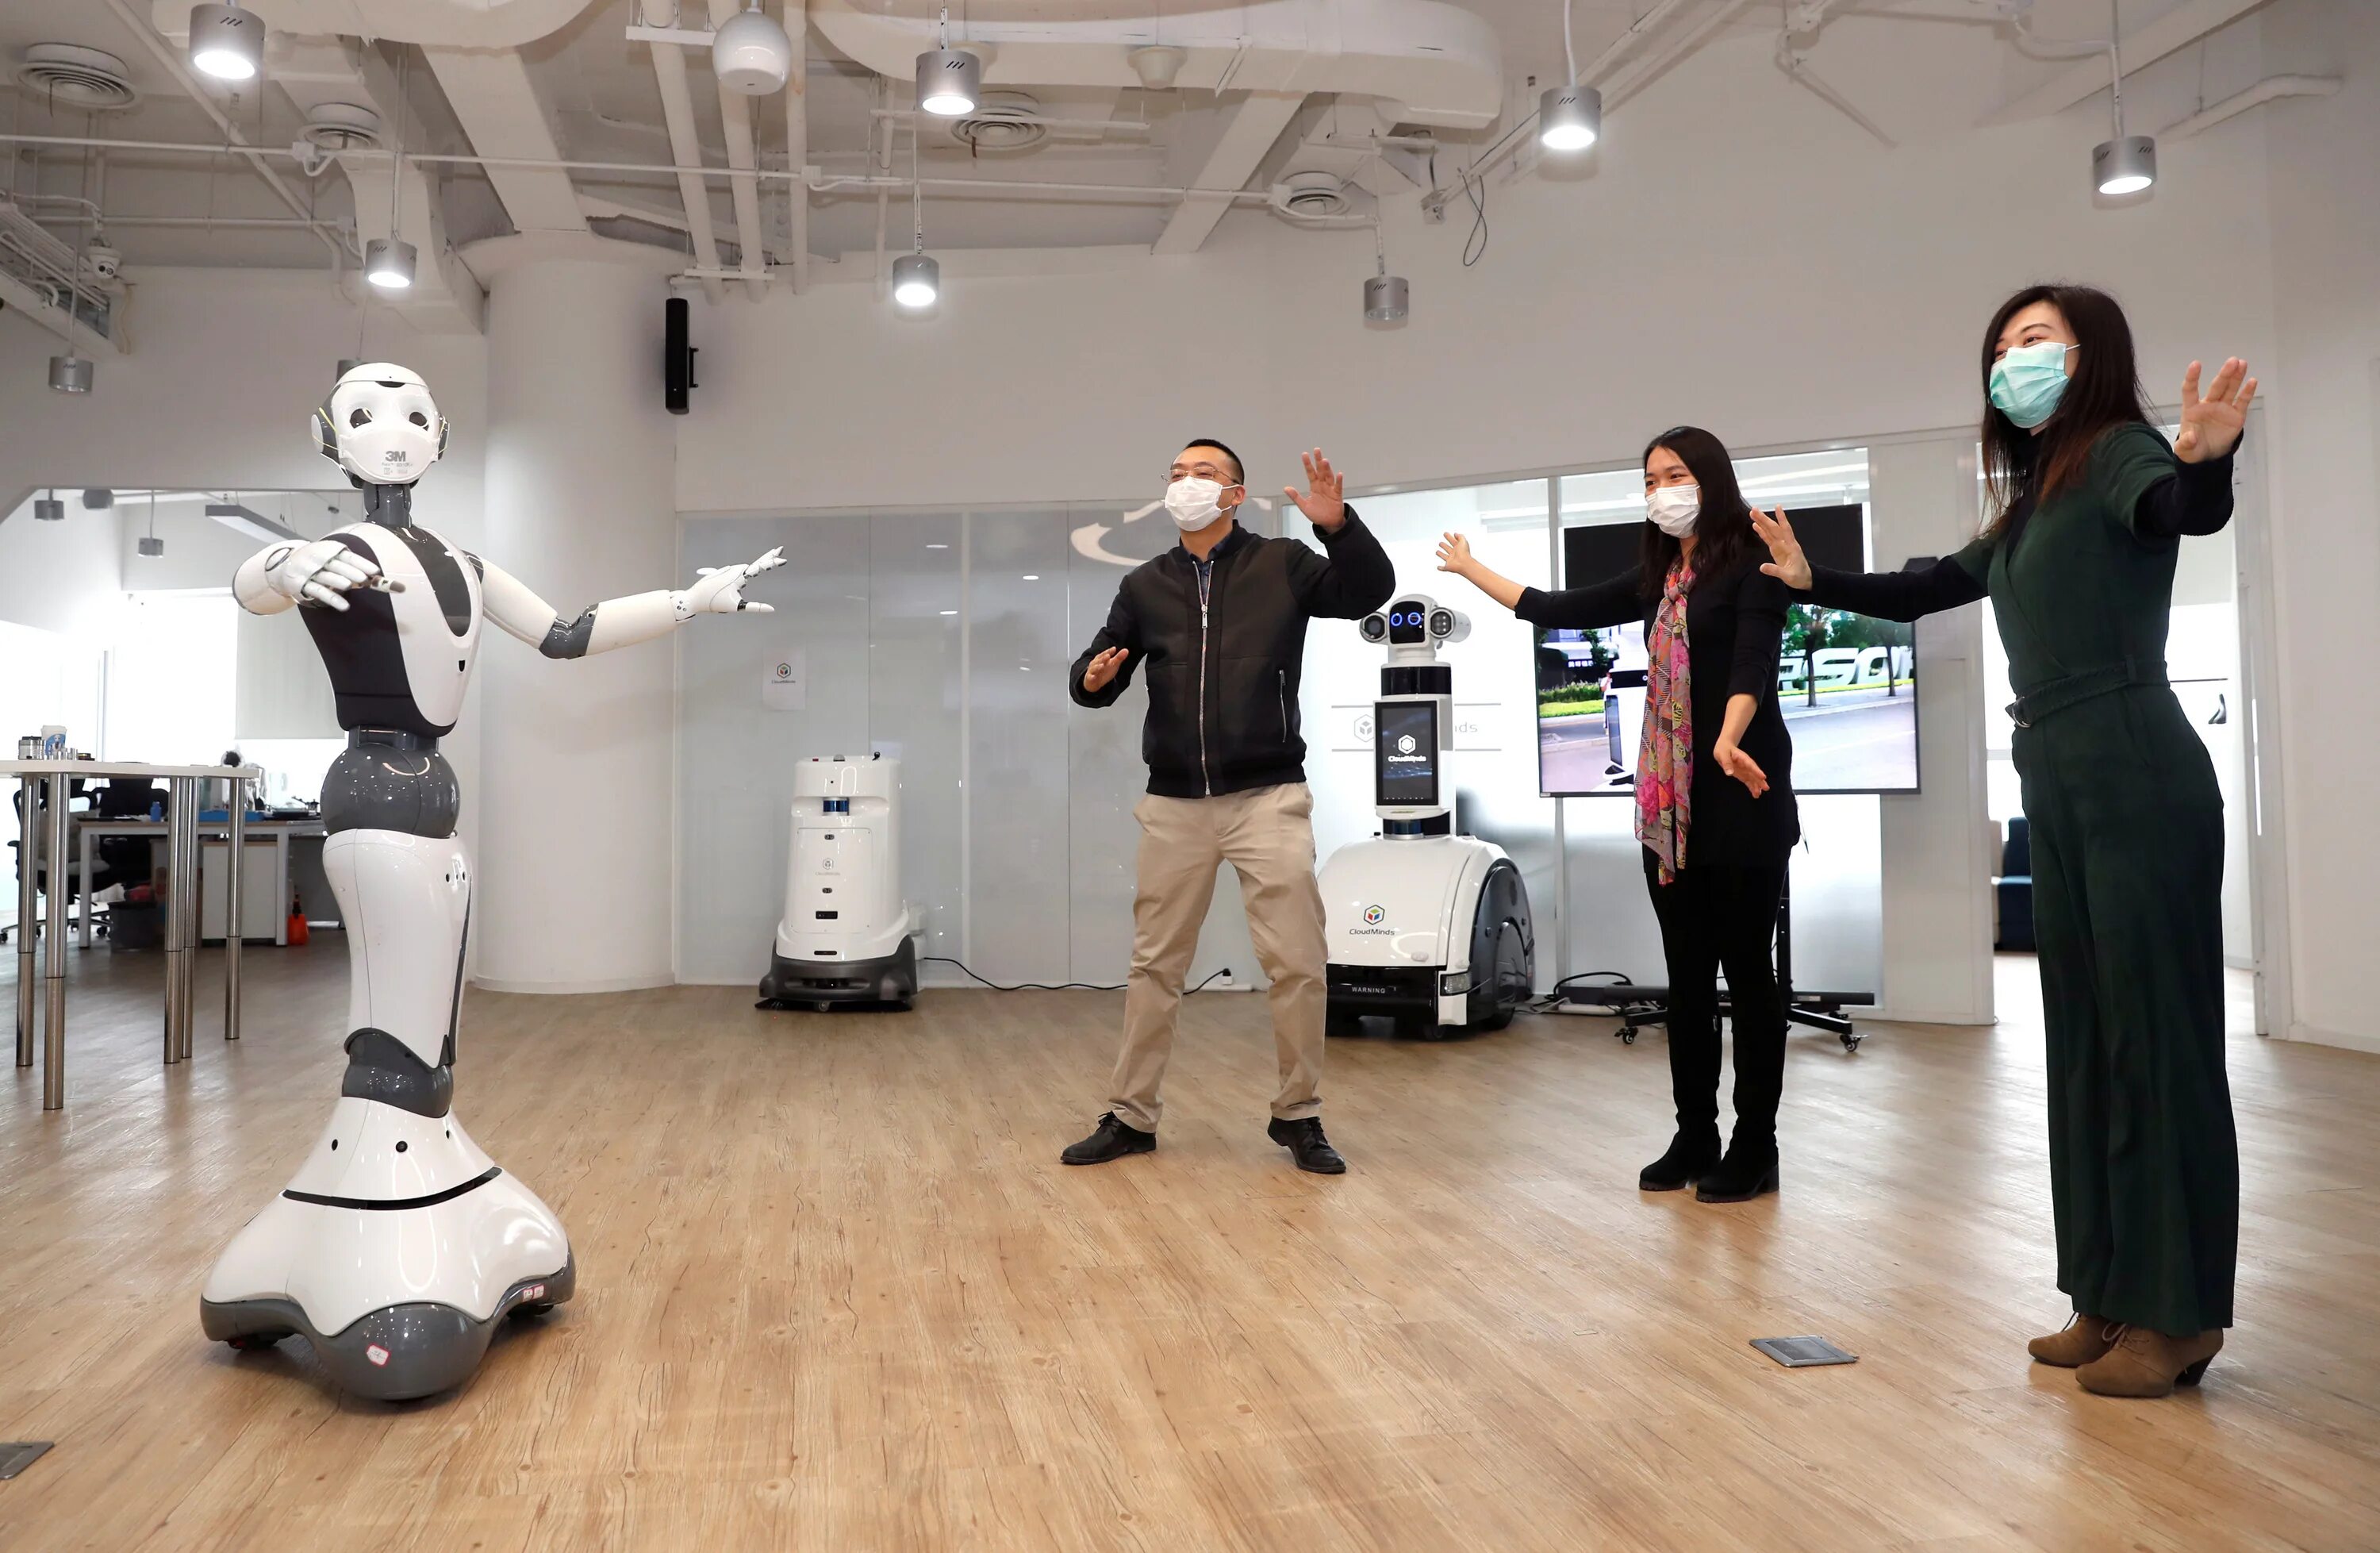 21 урок для xxi. Роботы в повседневной жизни. Роботы заменят людей. Робот помогает человеку. Современные технологии в повседневной жизни.